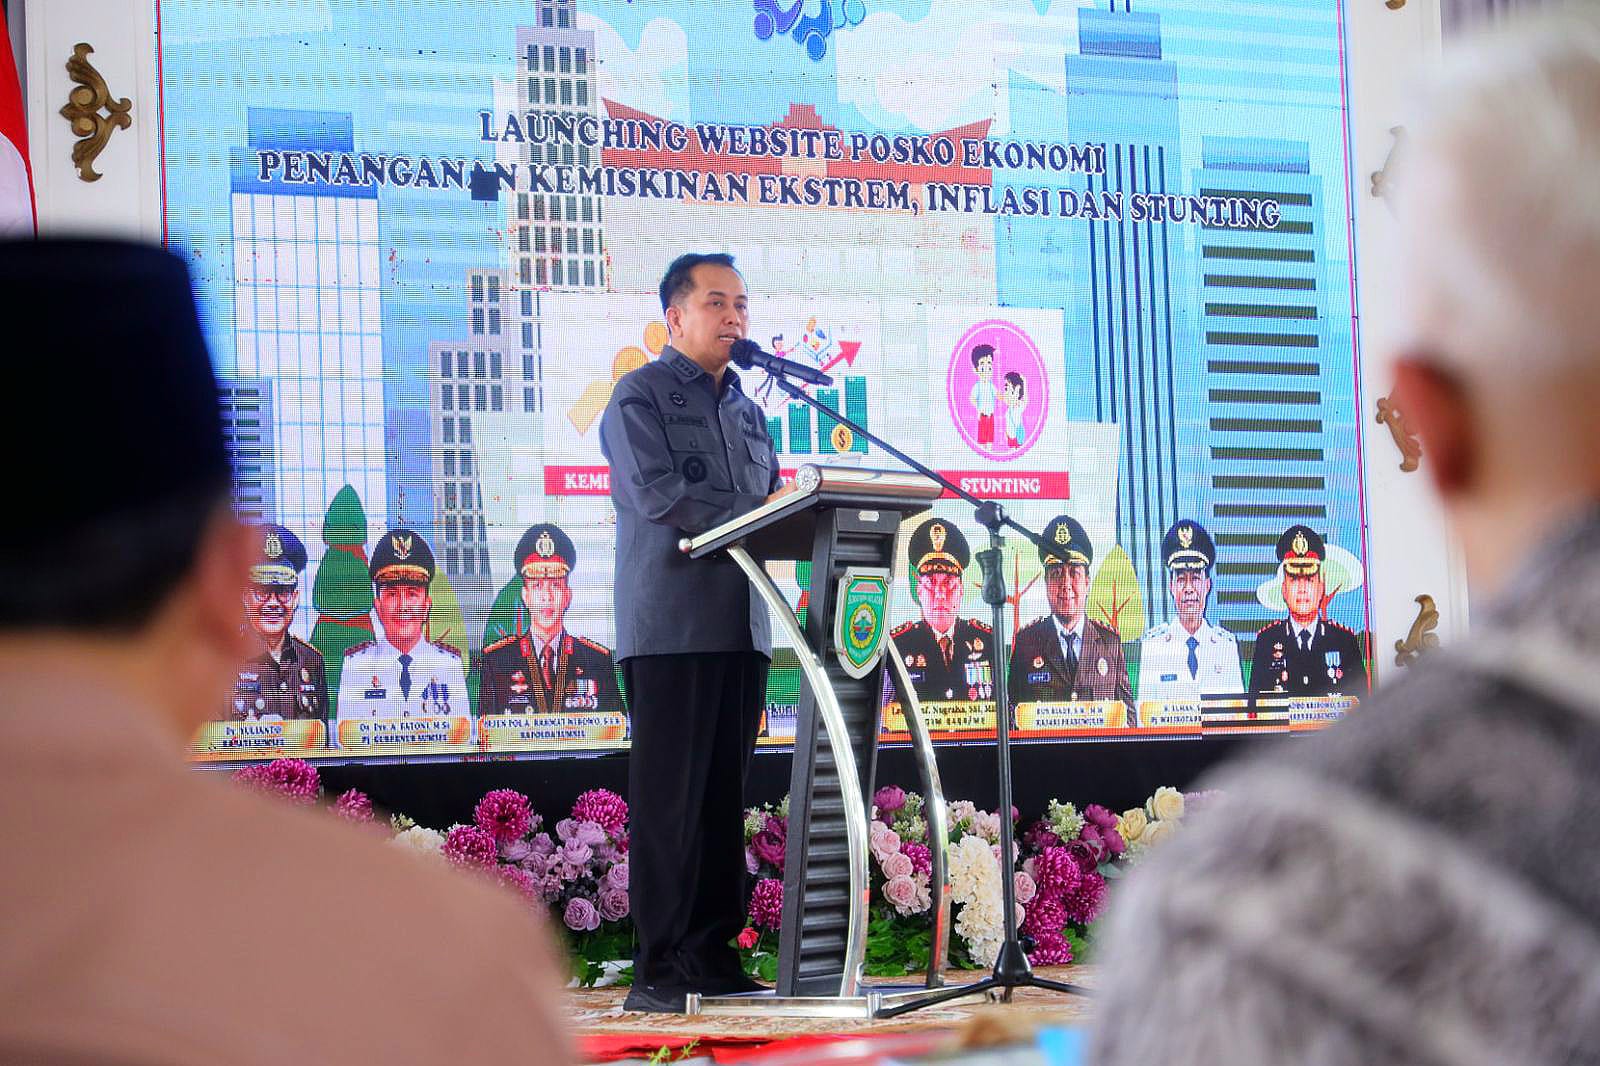 Pj Gubernur Sumsel Launching Website Posko Ekonomi di Kota Prabumulih